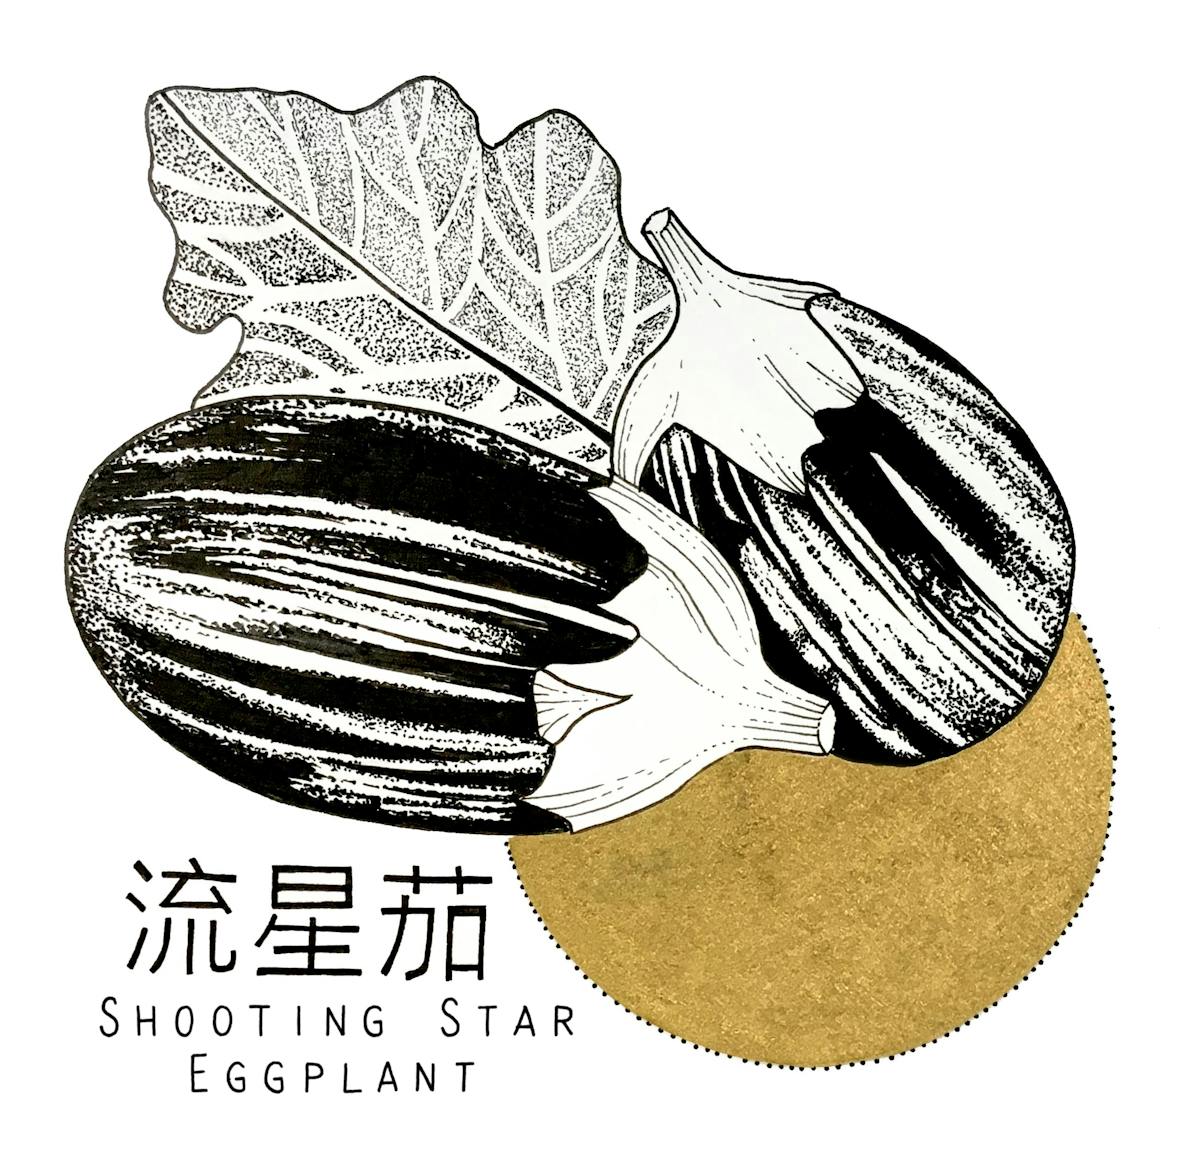 King's co - Shooting Star Eggplant